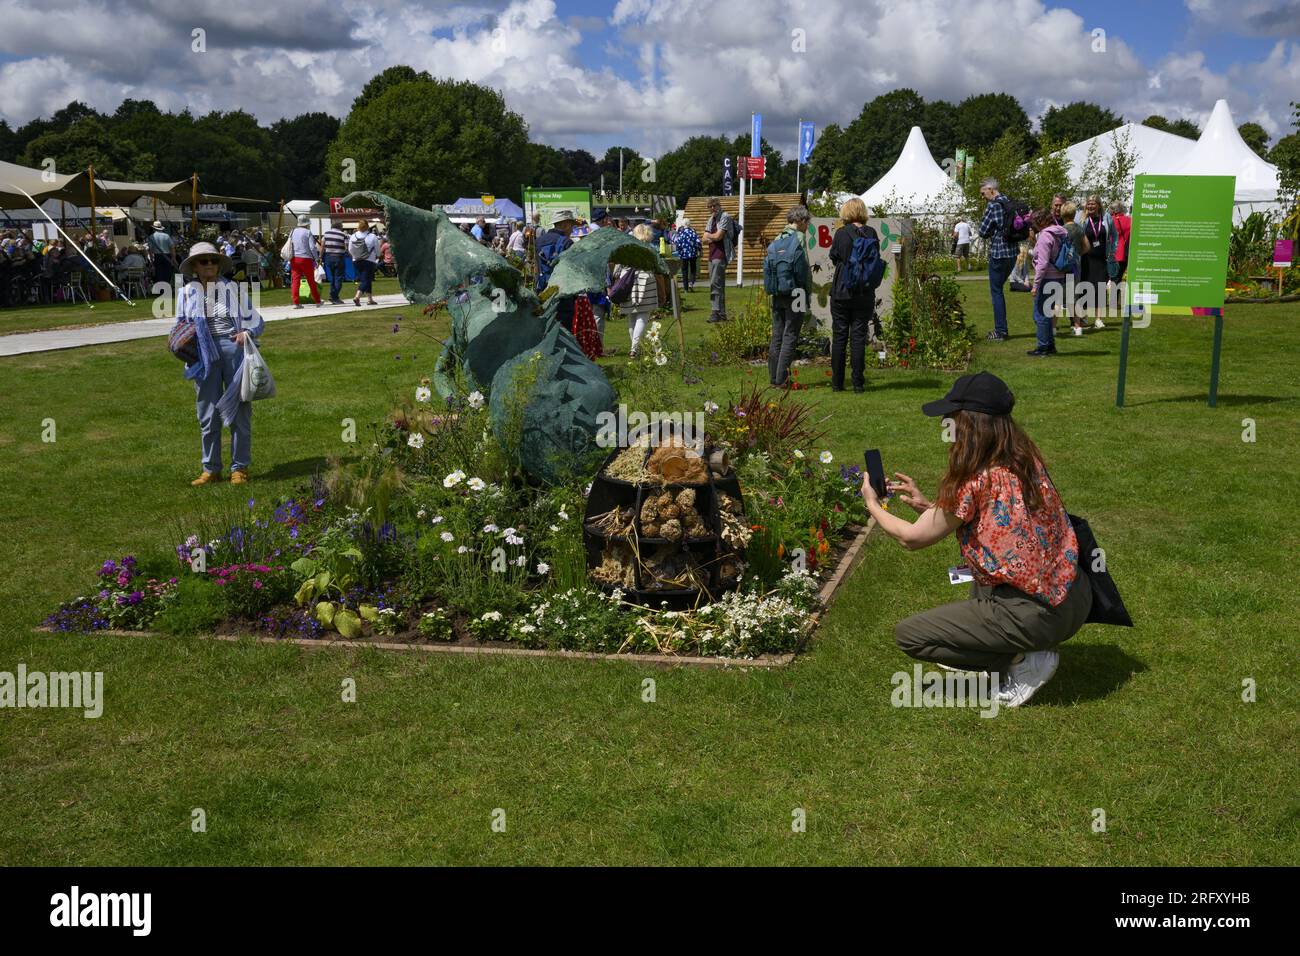 Die Person fotografiert am Telefon „A Journey through Middle Earth“, einen umweltfreundlichen Schulgarten – RHS Tatton Park Flower Show 2023, Cheshire England, Großbritannien. Stockfoto